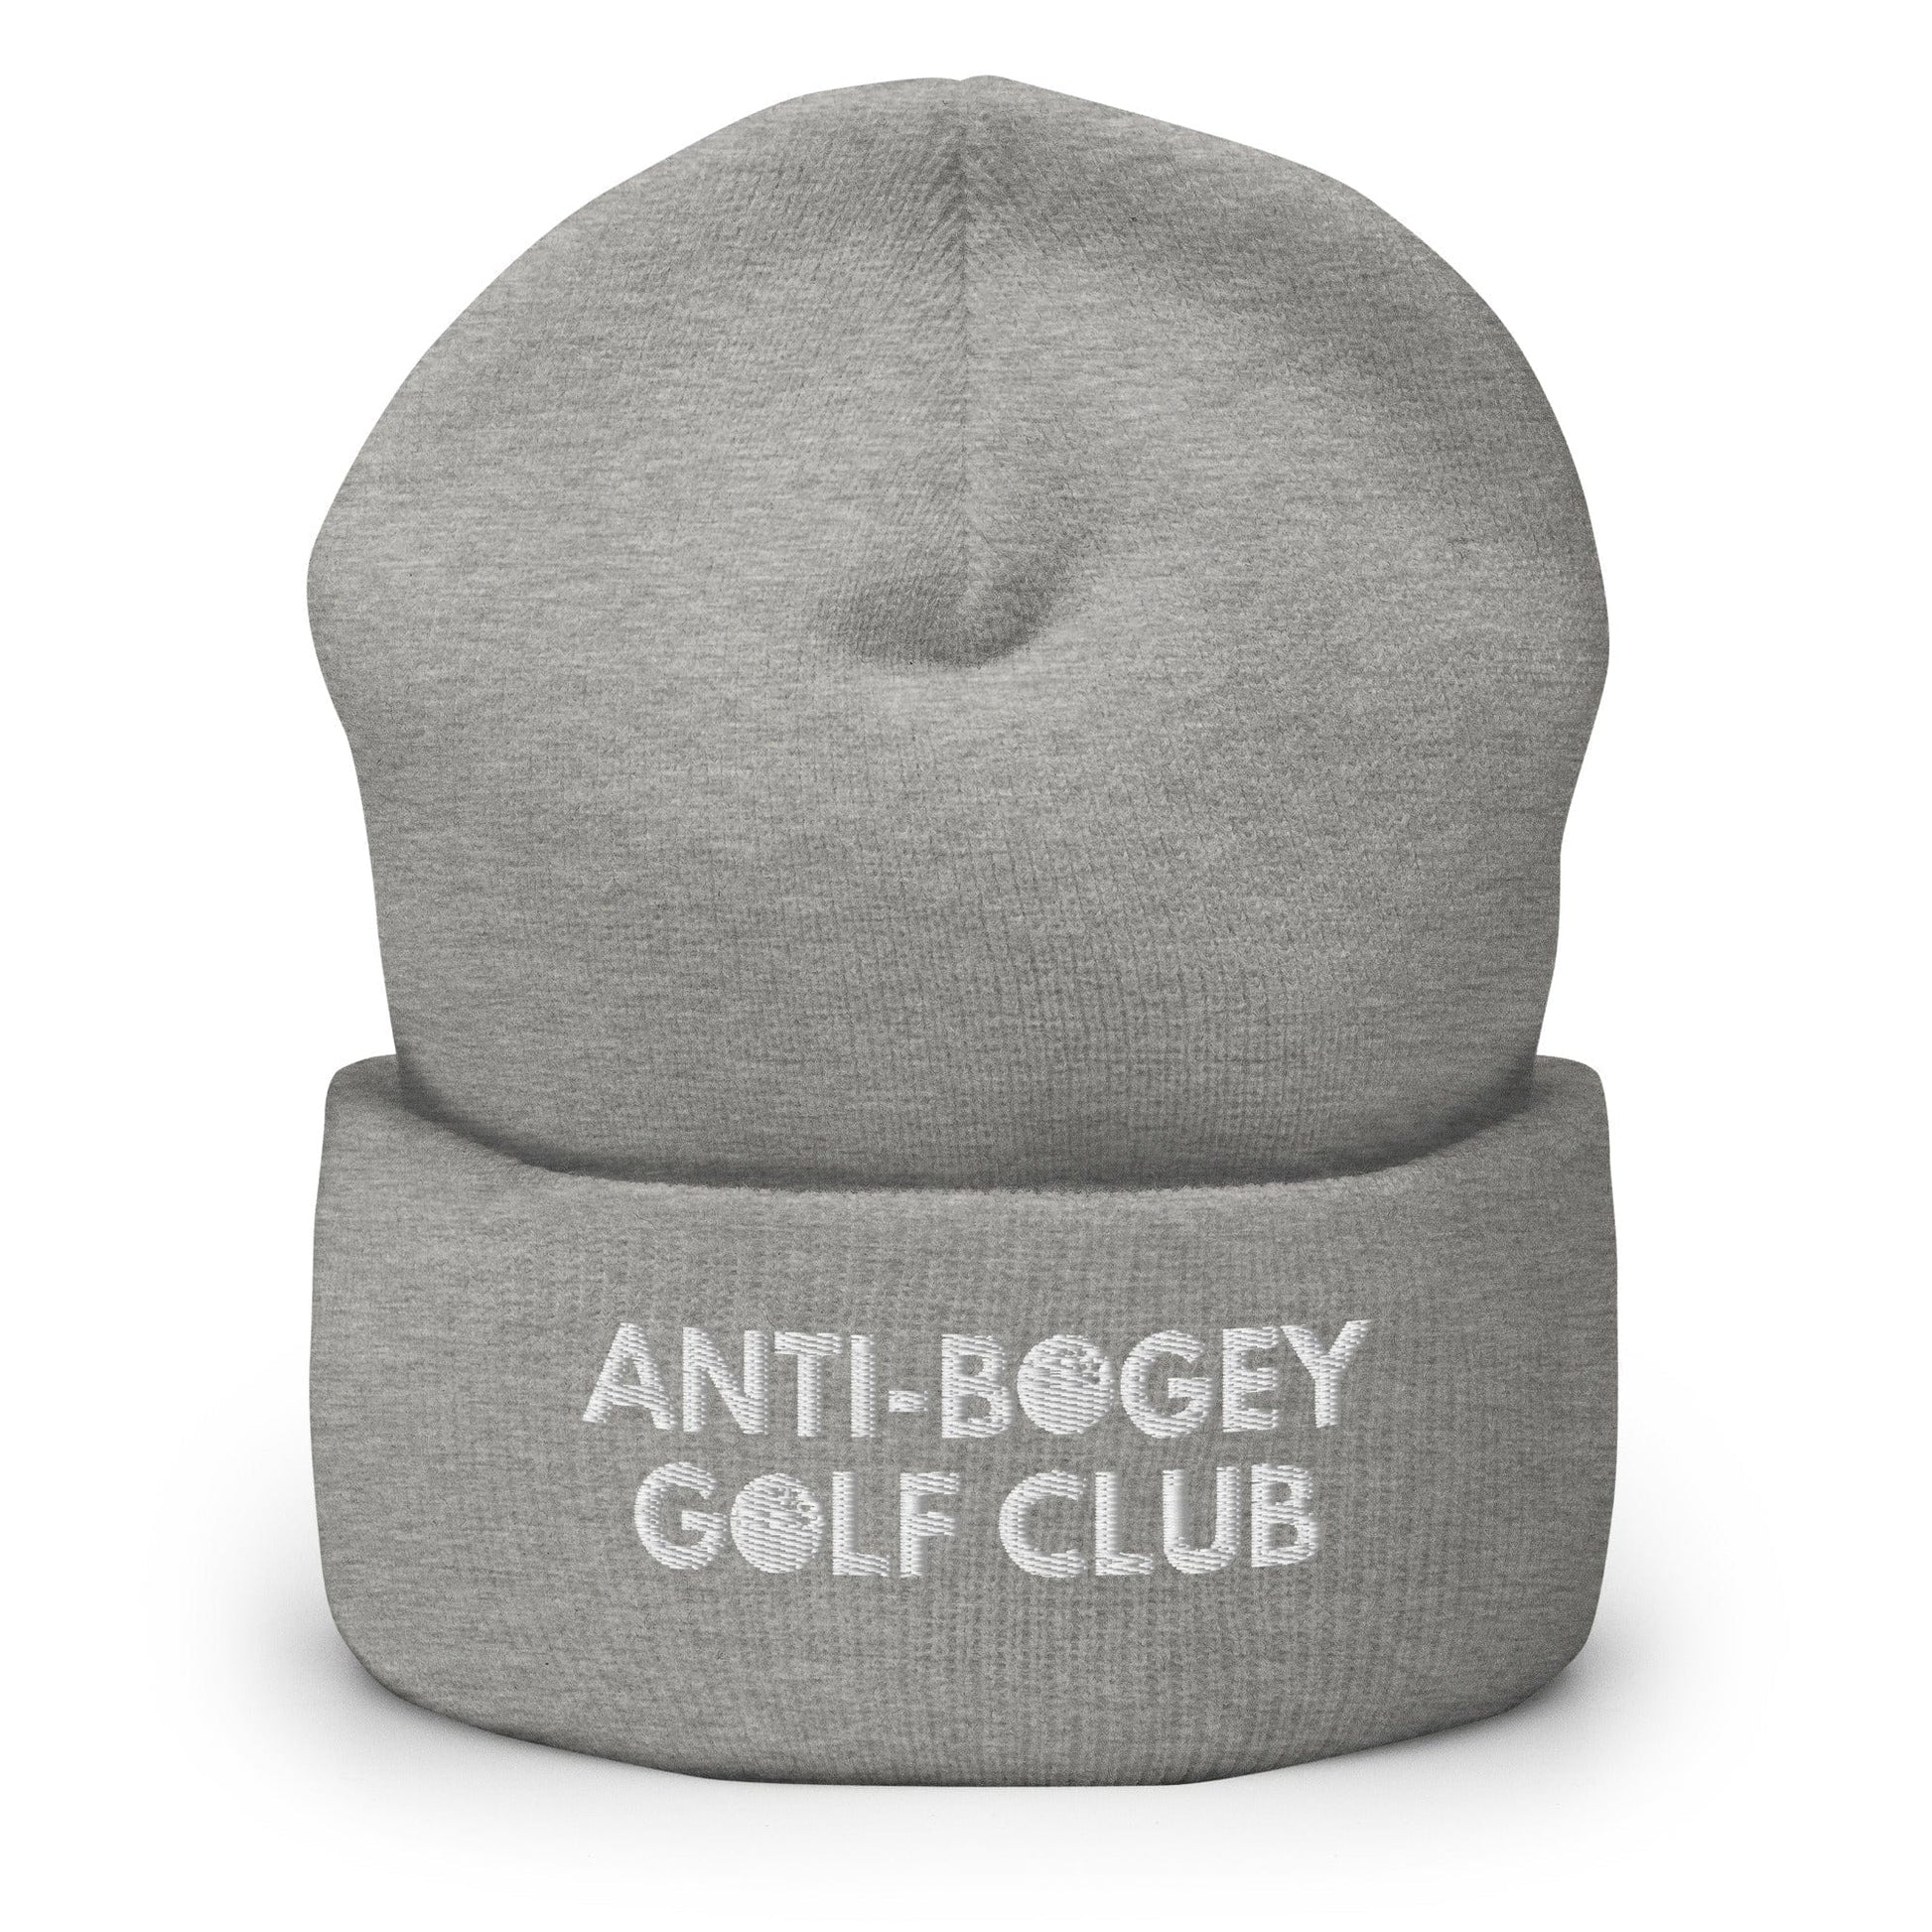 Funny Golfer Gifts  Beanie Heather Grey Anti-Bogey Golf Club Hat Beanie